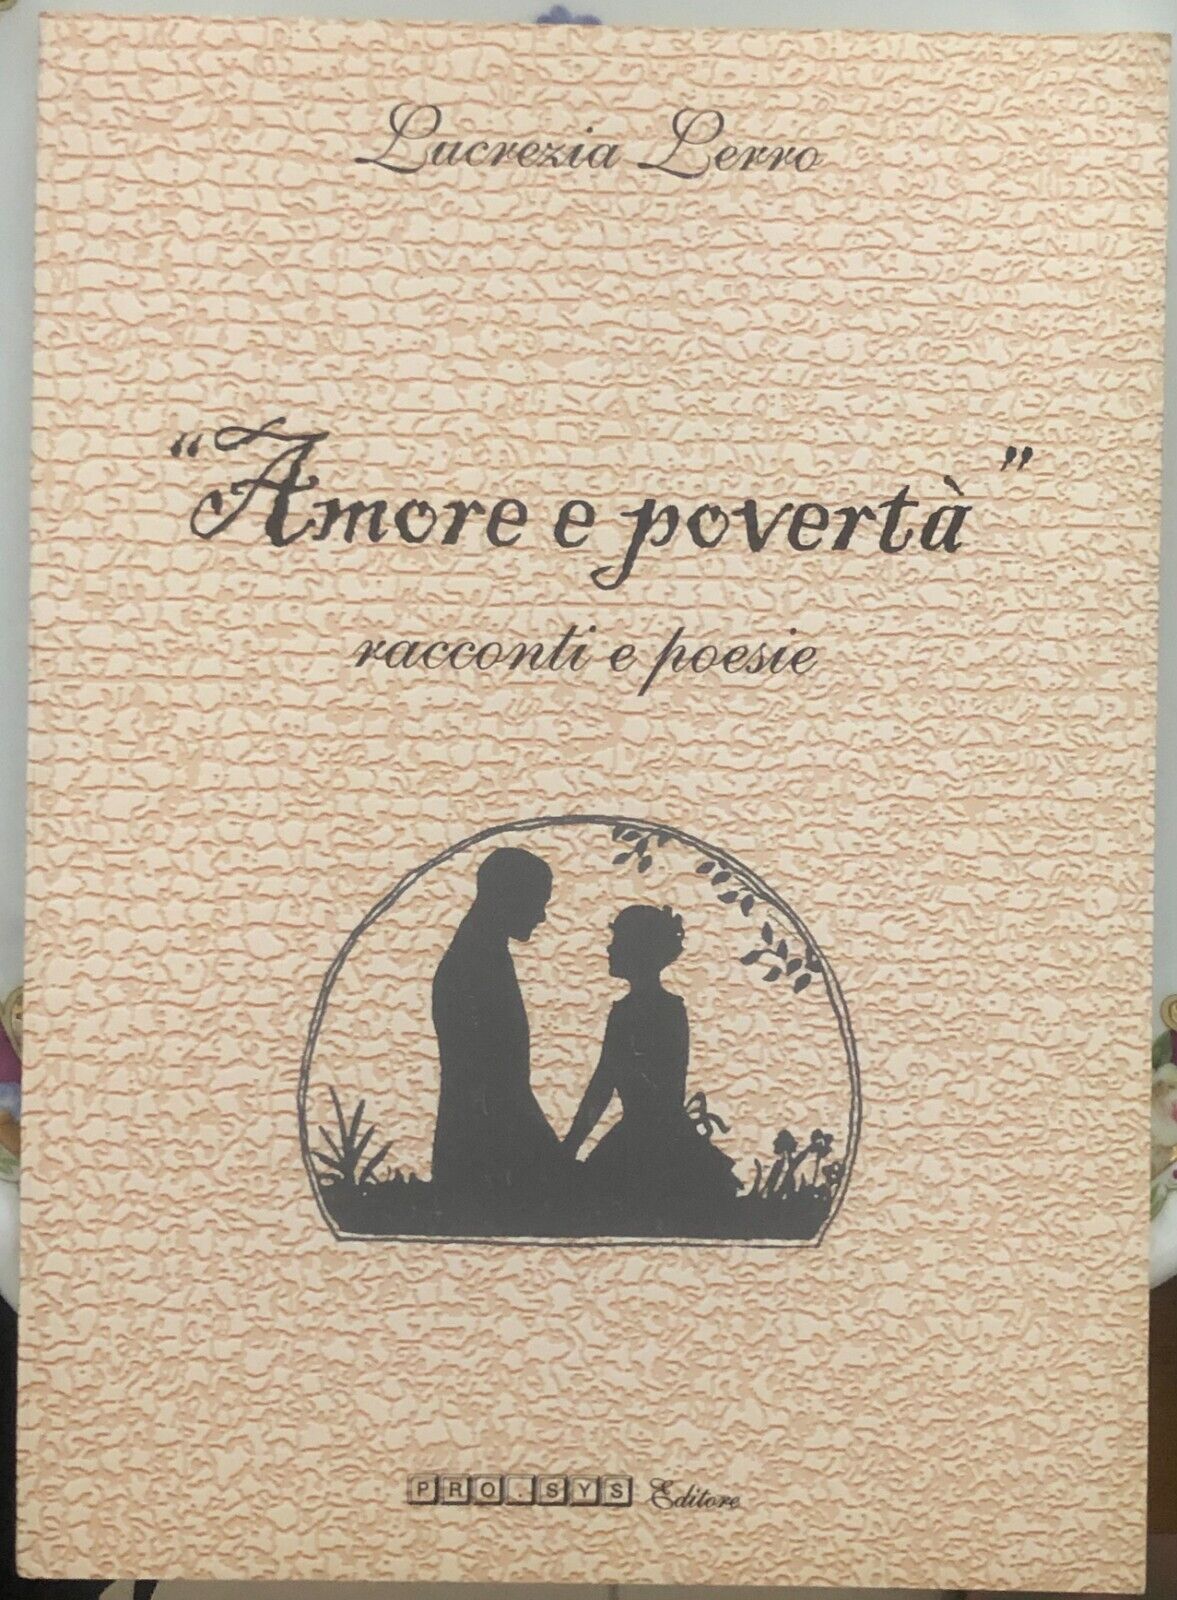 Amore e povert?. Racconti e poesie di Lucrezia Lerro,  2000,  Pro.sys Editore